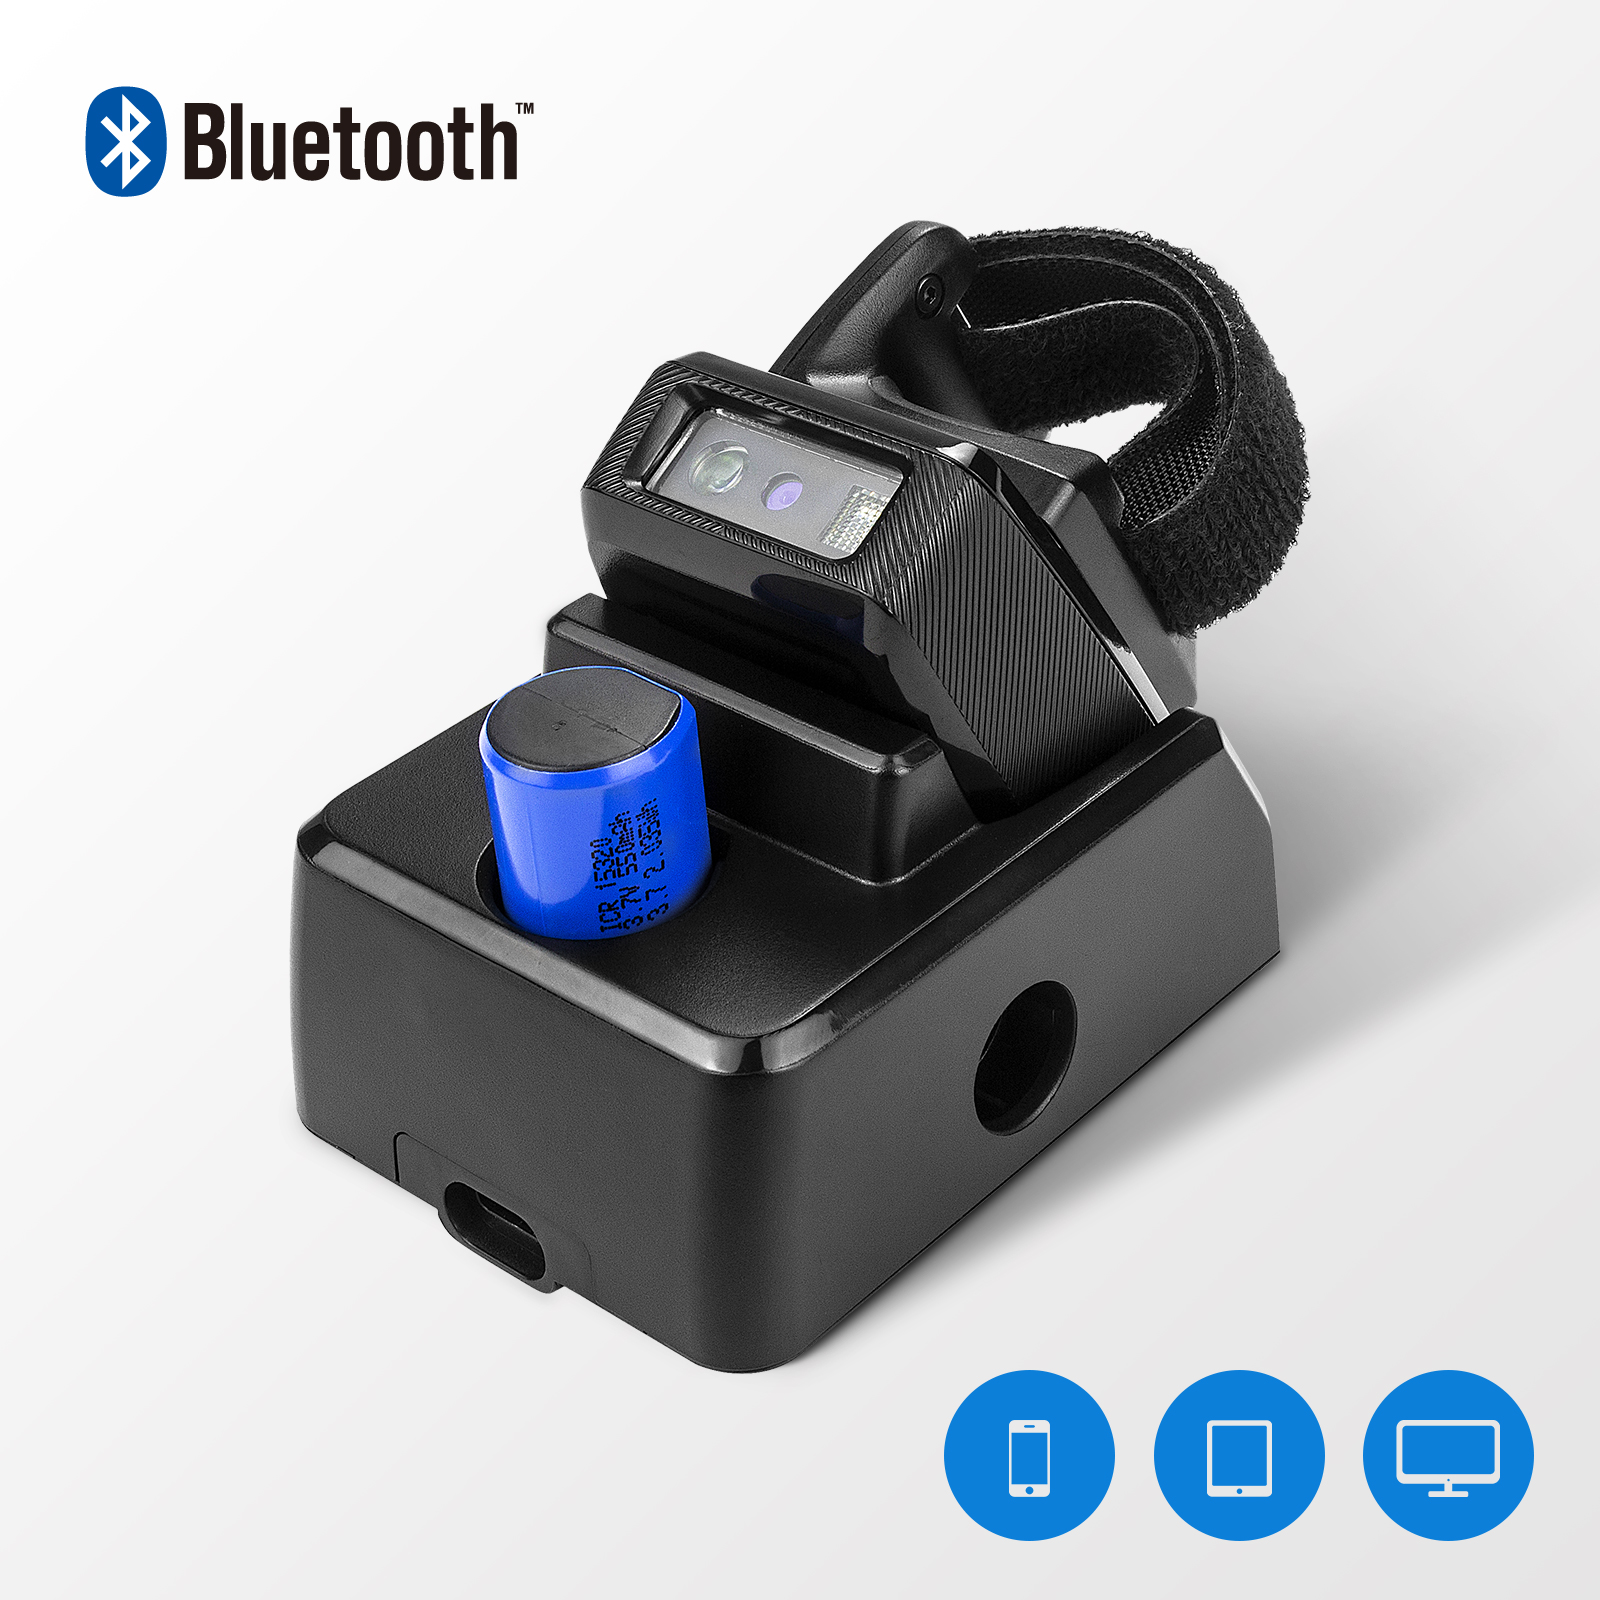 NETUM RS-8000BT Bluetooth draadloze barcodelezer